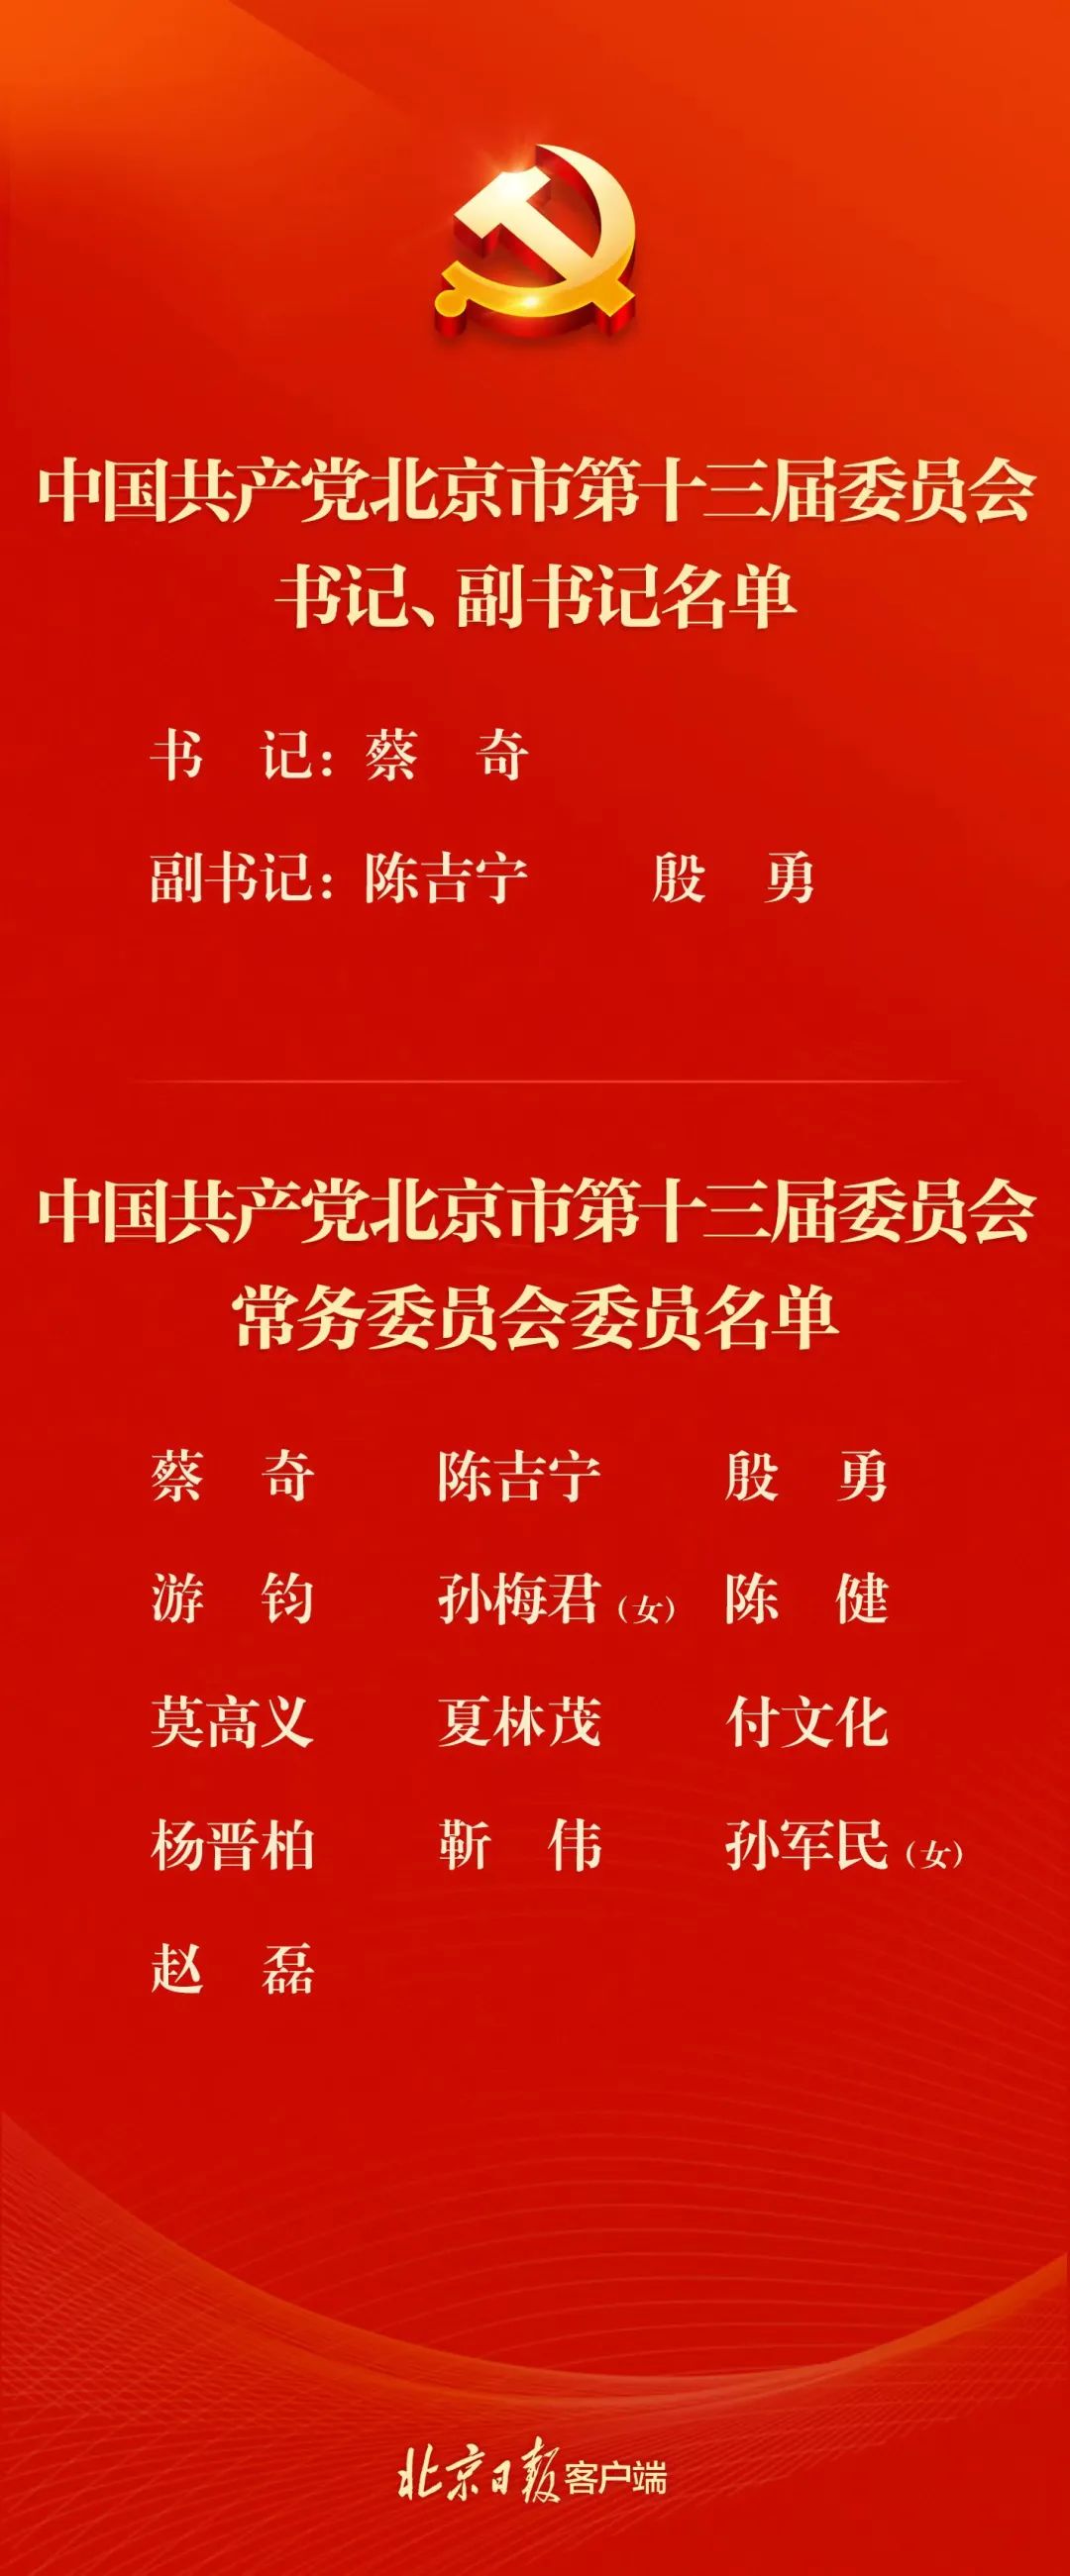 中共北京市第十三届委员会书记、副书记、常委名单|北京市